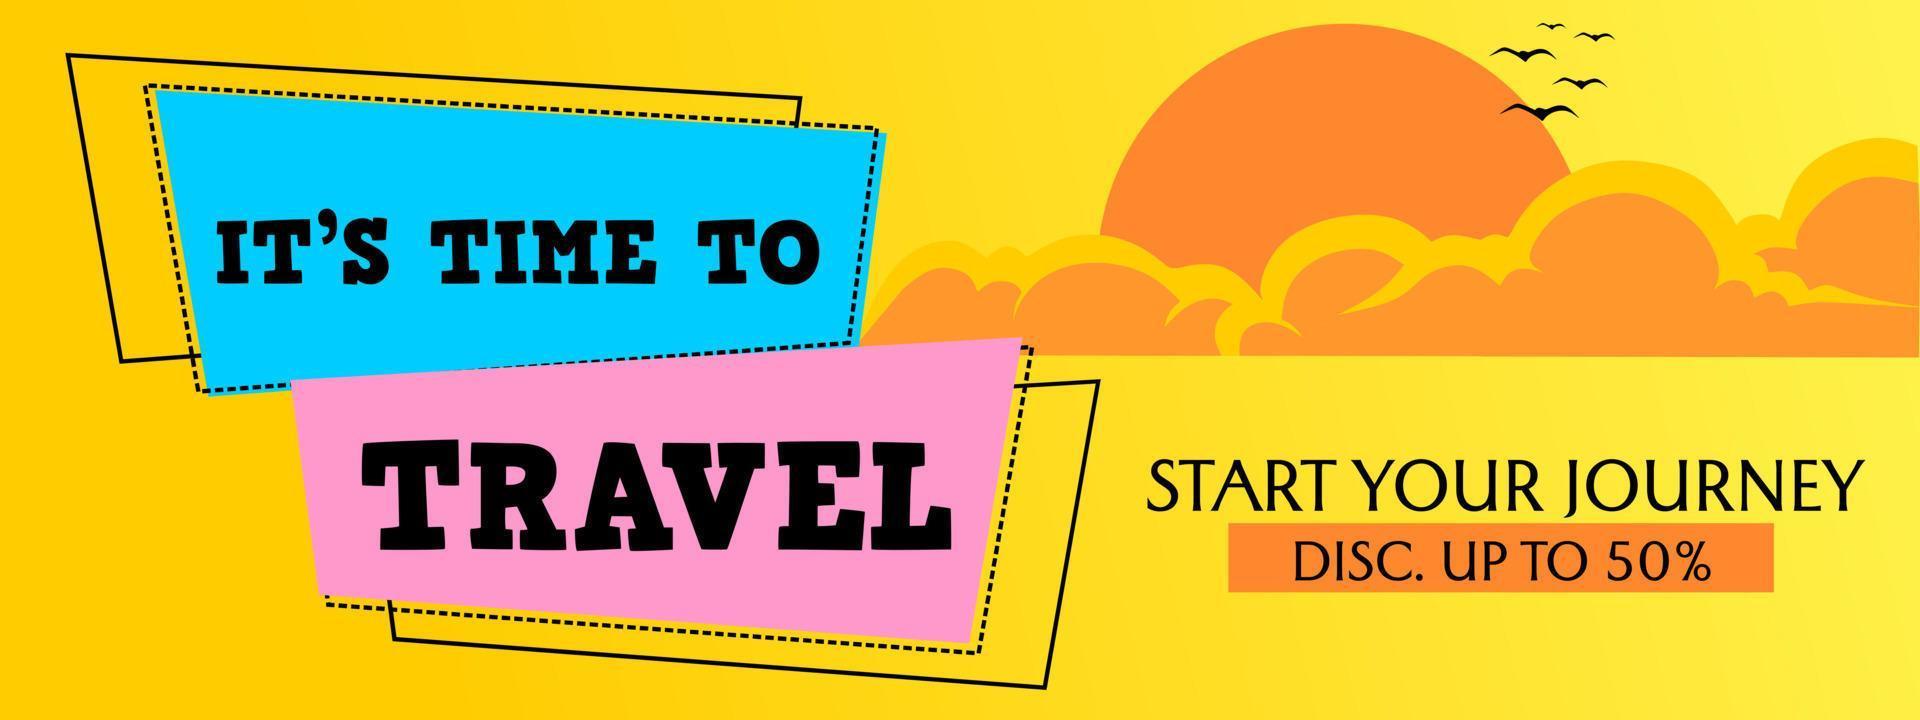 design del banner di promozione dell'agenzia di viaggi. sfondo giallo con illustrazione di nuvole vettore